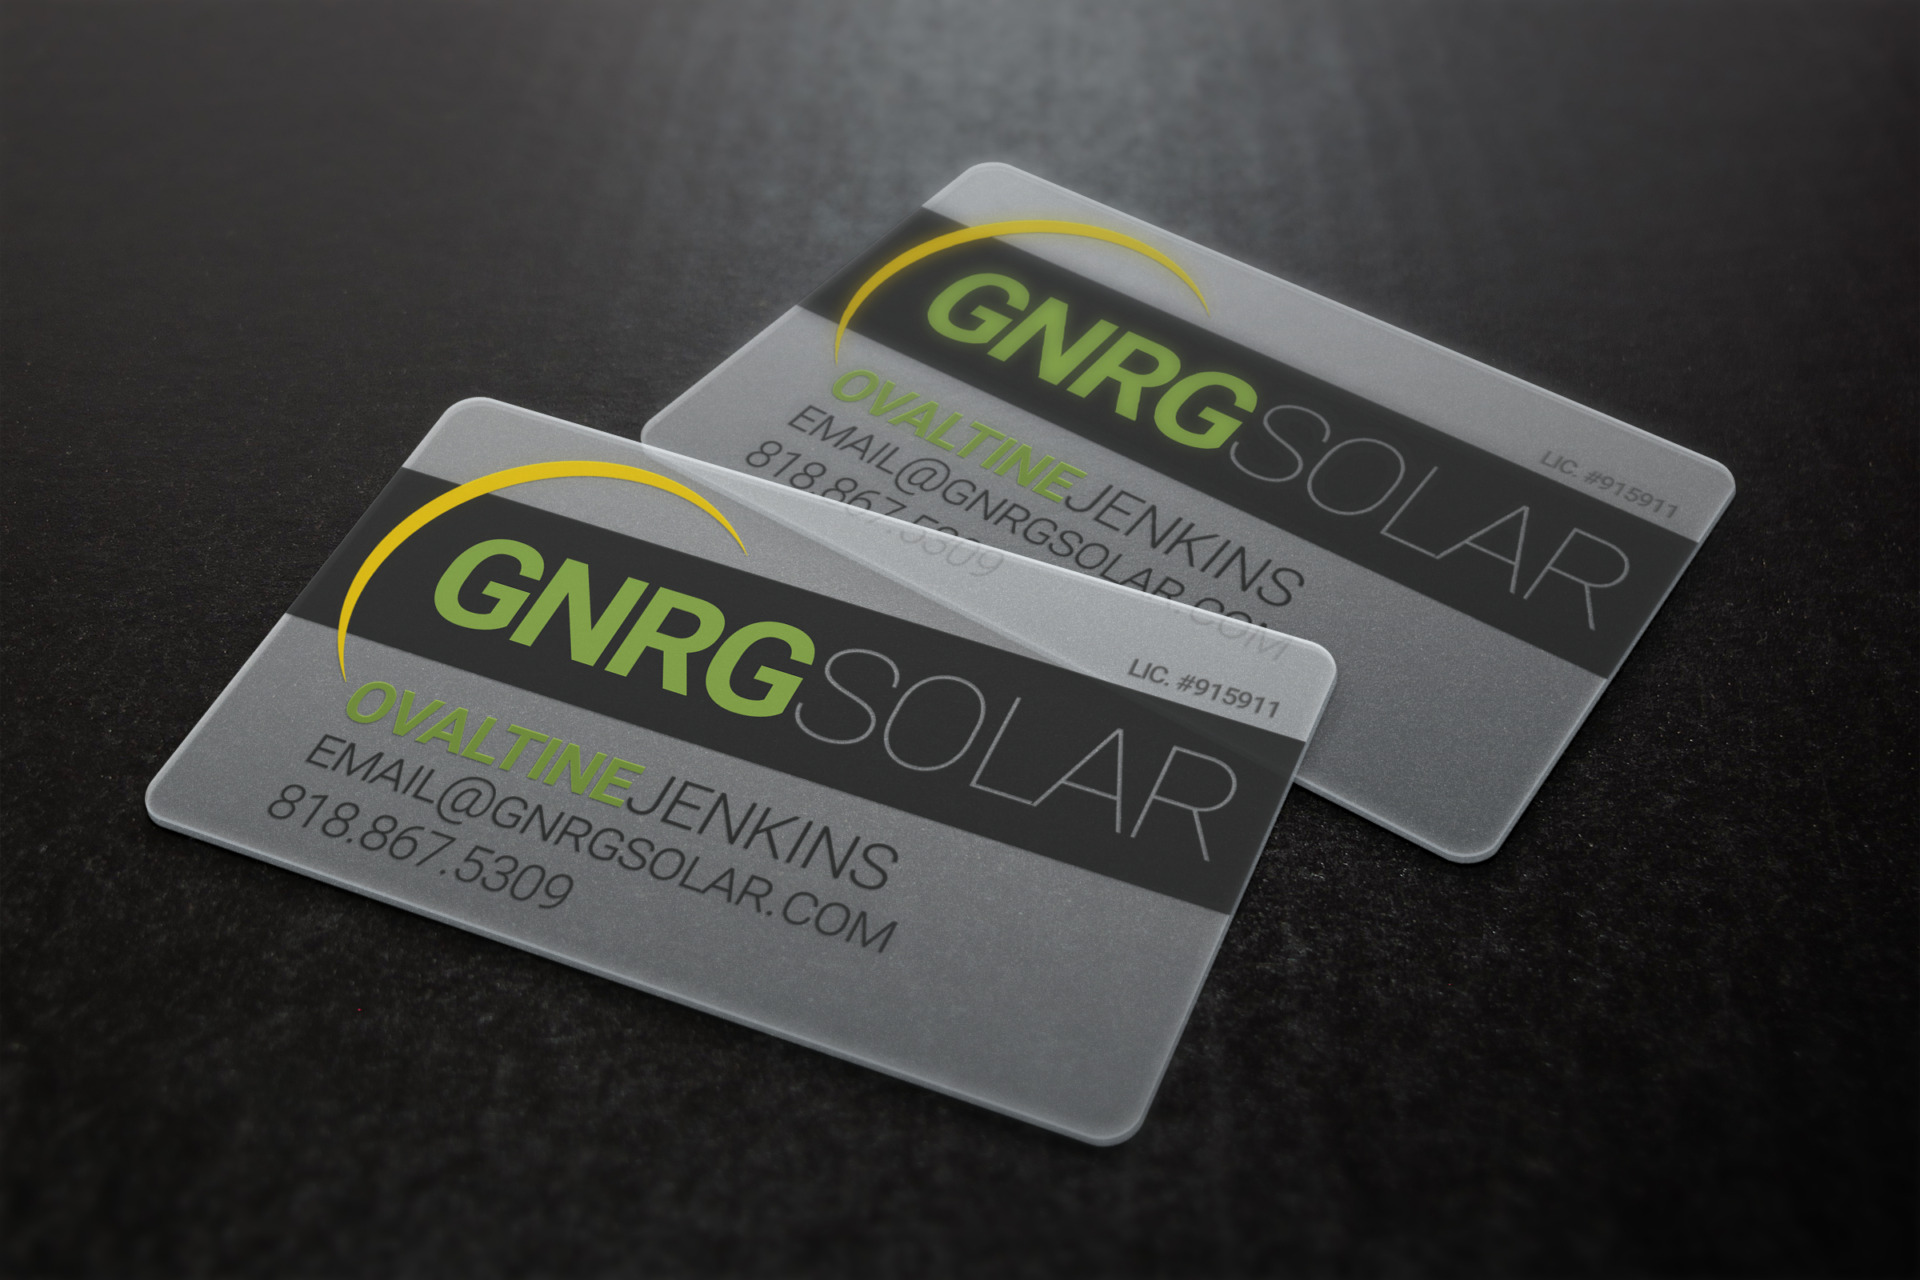 GNRG Solar - Business Card Design